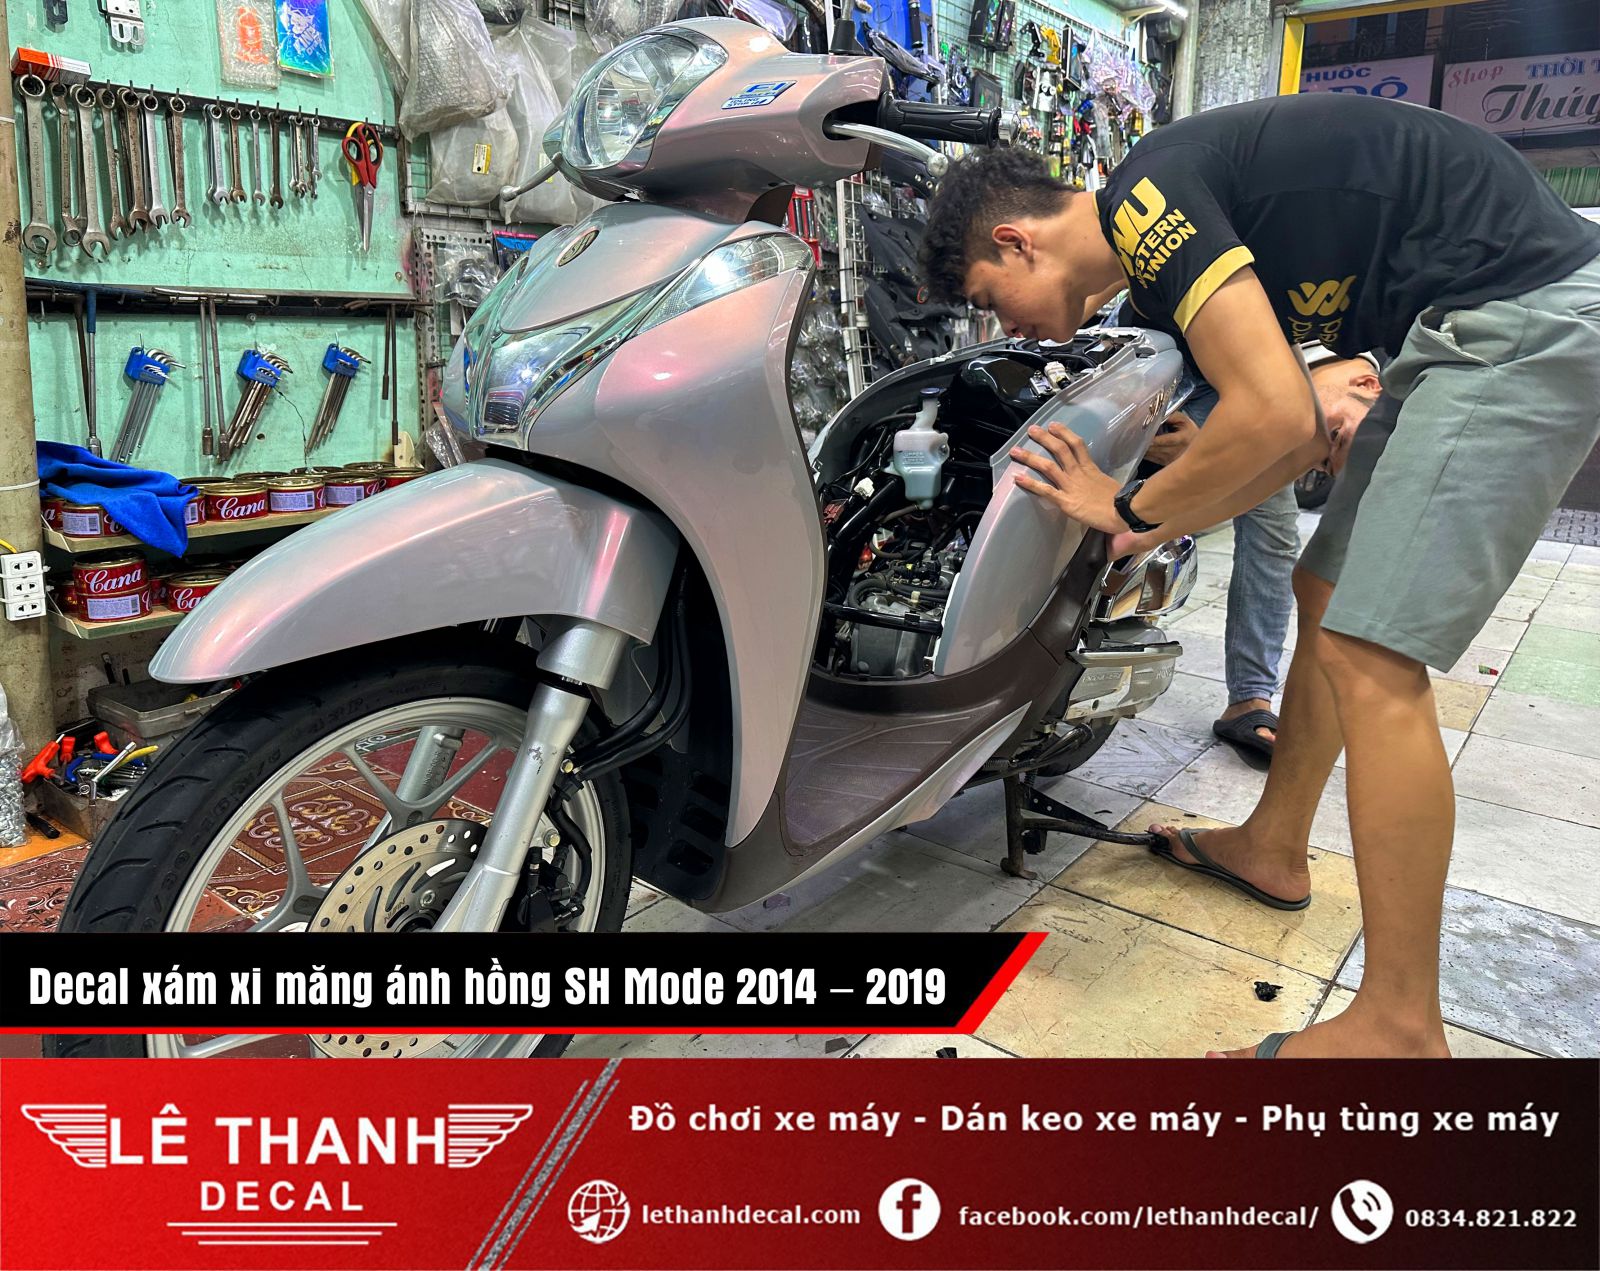 [TOP] 10+ tiệm dán decal xe máy tại huyện Củ Chi uy tín, chất lượng 2023